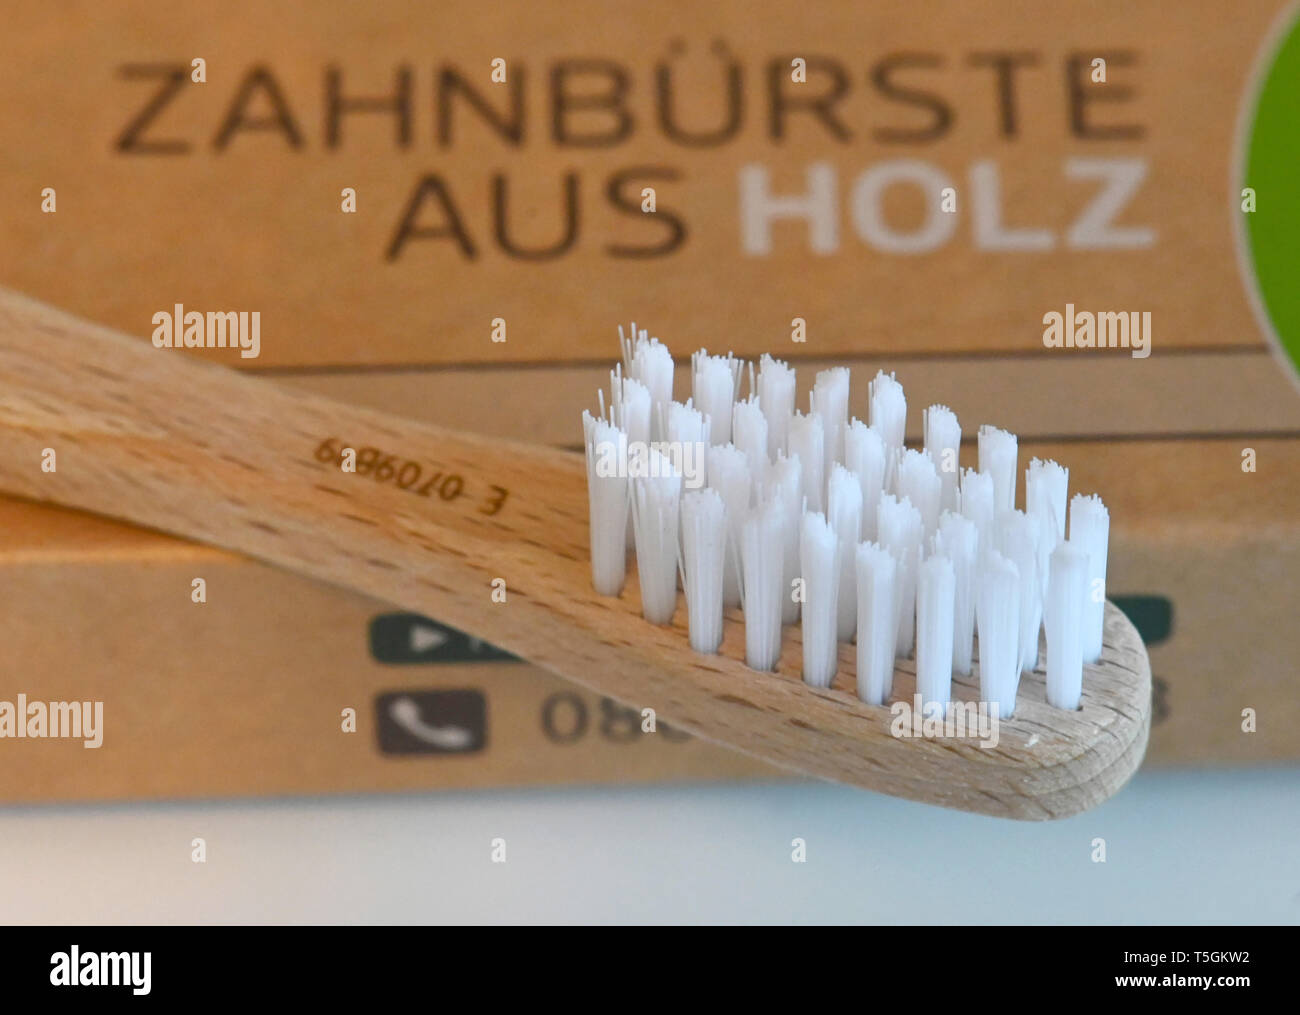 Karlsruhe, Deutschland. 25 Apr, 2019. Eine hölzerne Zahnbürste von alverde  Naturkosmetik liegt auf der Verpackung. Die Zahnbürste ist eine neue  Ergänzung zum dm-Drogeriemarkt. Auf einer Pressekonferenz der Drogeriekette  am 25.04.2019, dm-Chef Harsch